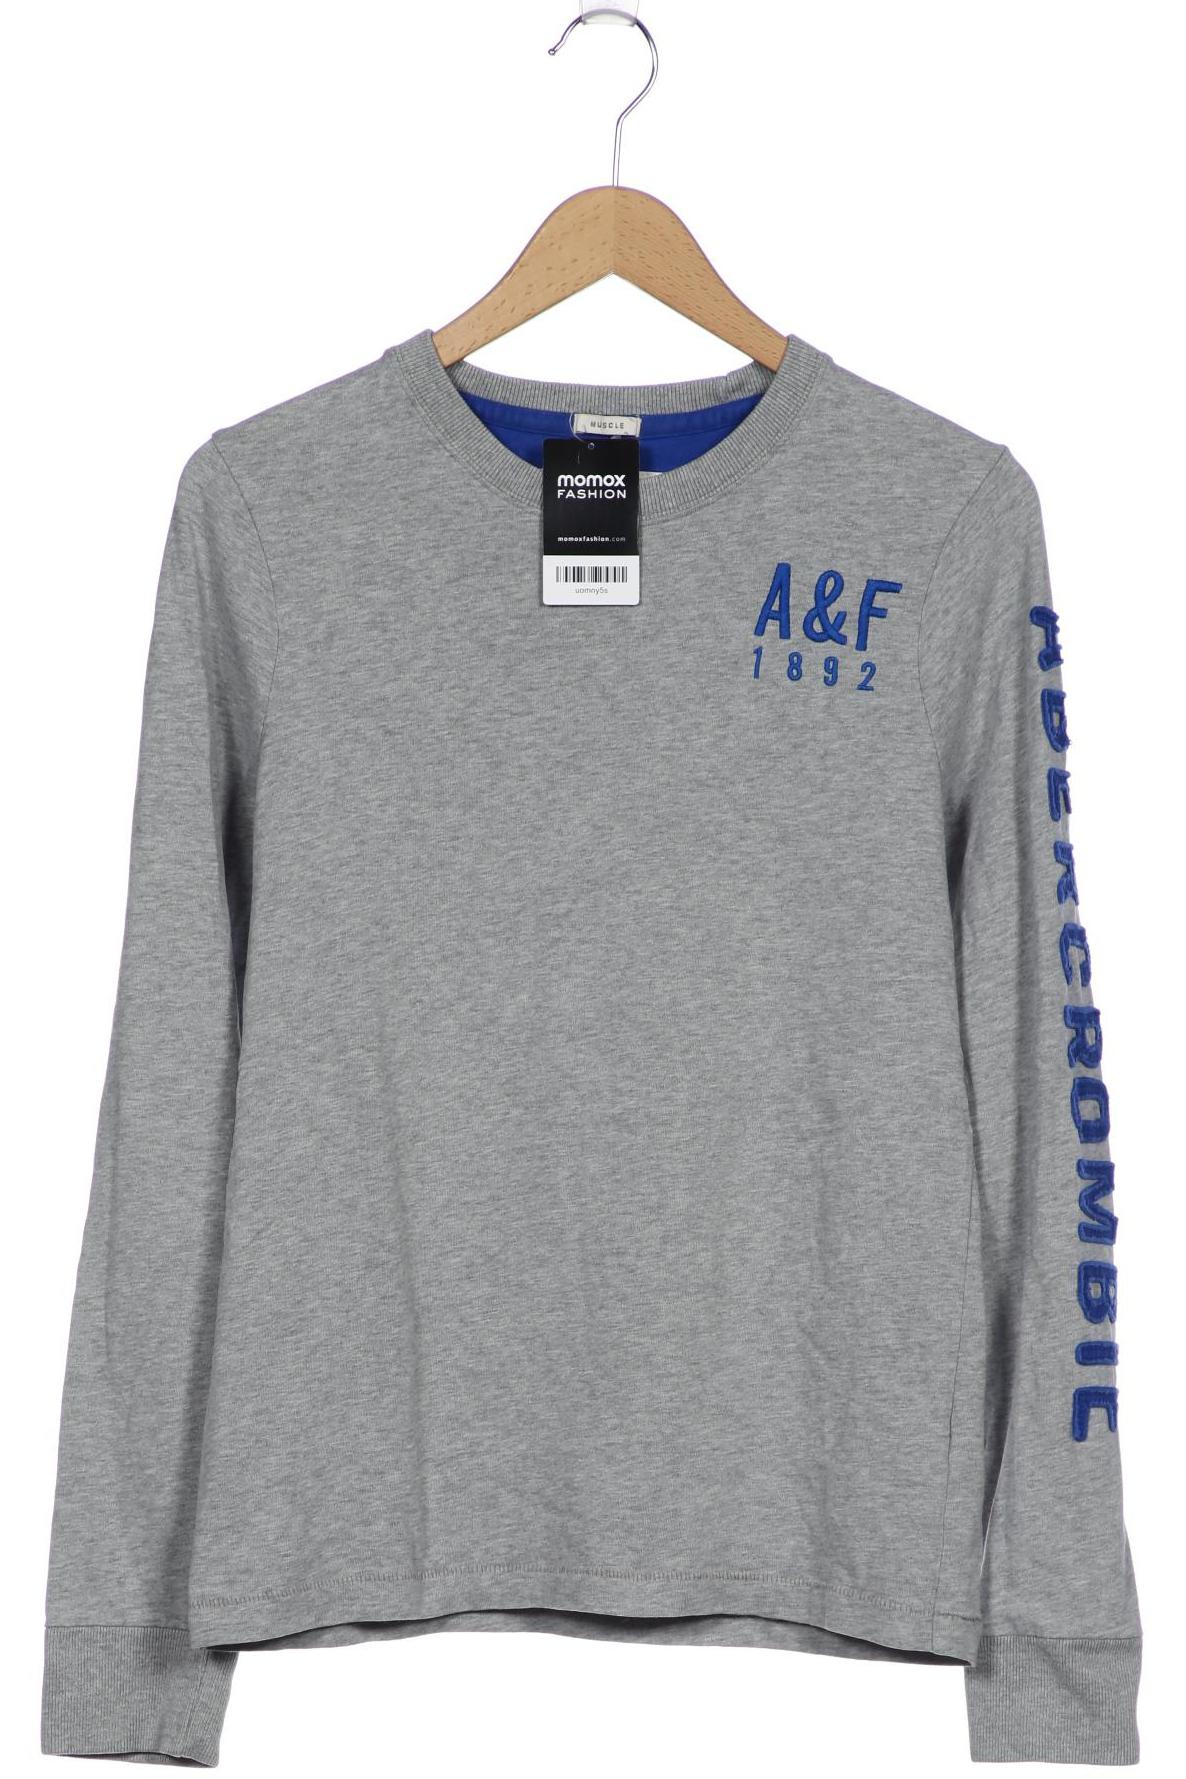 Abercrombie & Fitch Herren Sweatshirt, grau von Abercrombie & Fitch